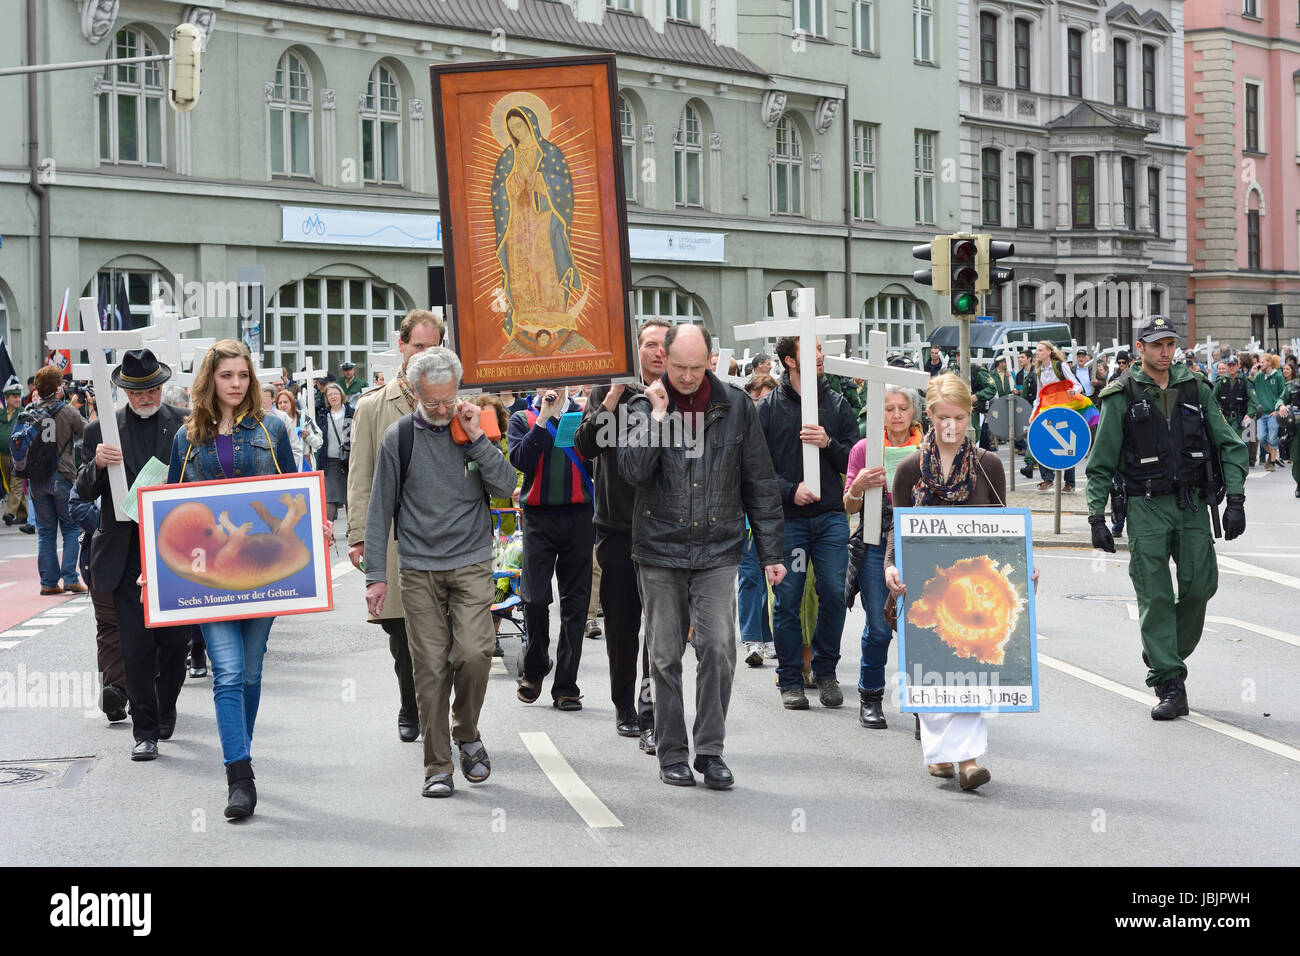 Monaco di Baviera, Germania - 10 Maggio 2014: Anti-Abortion dimostrazione con i partecipanti che trasportano croci cristiane e banner. Centinaia hanno protestato pacificamente a Monaco di Baviera. Foto Stock